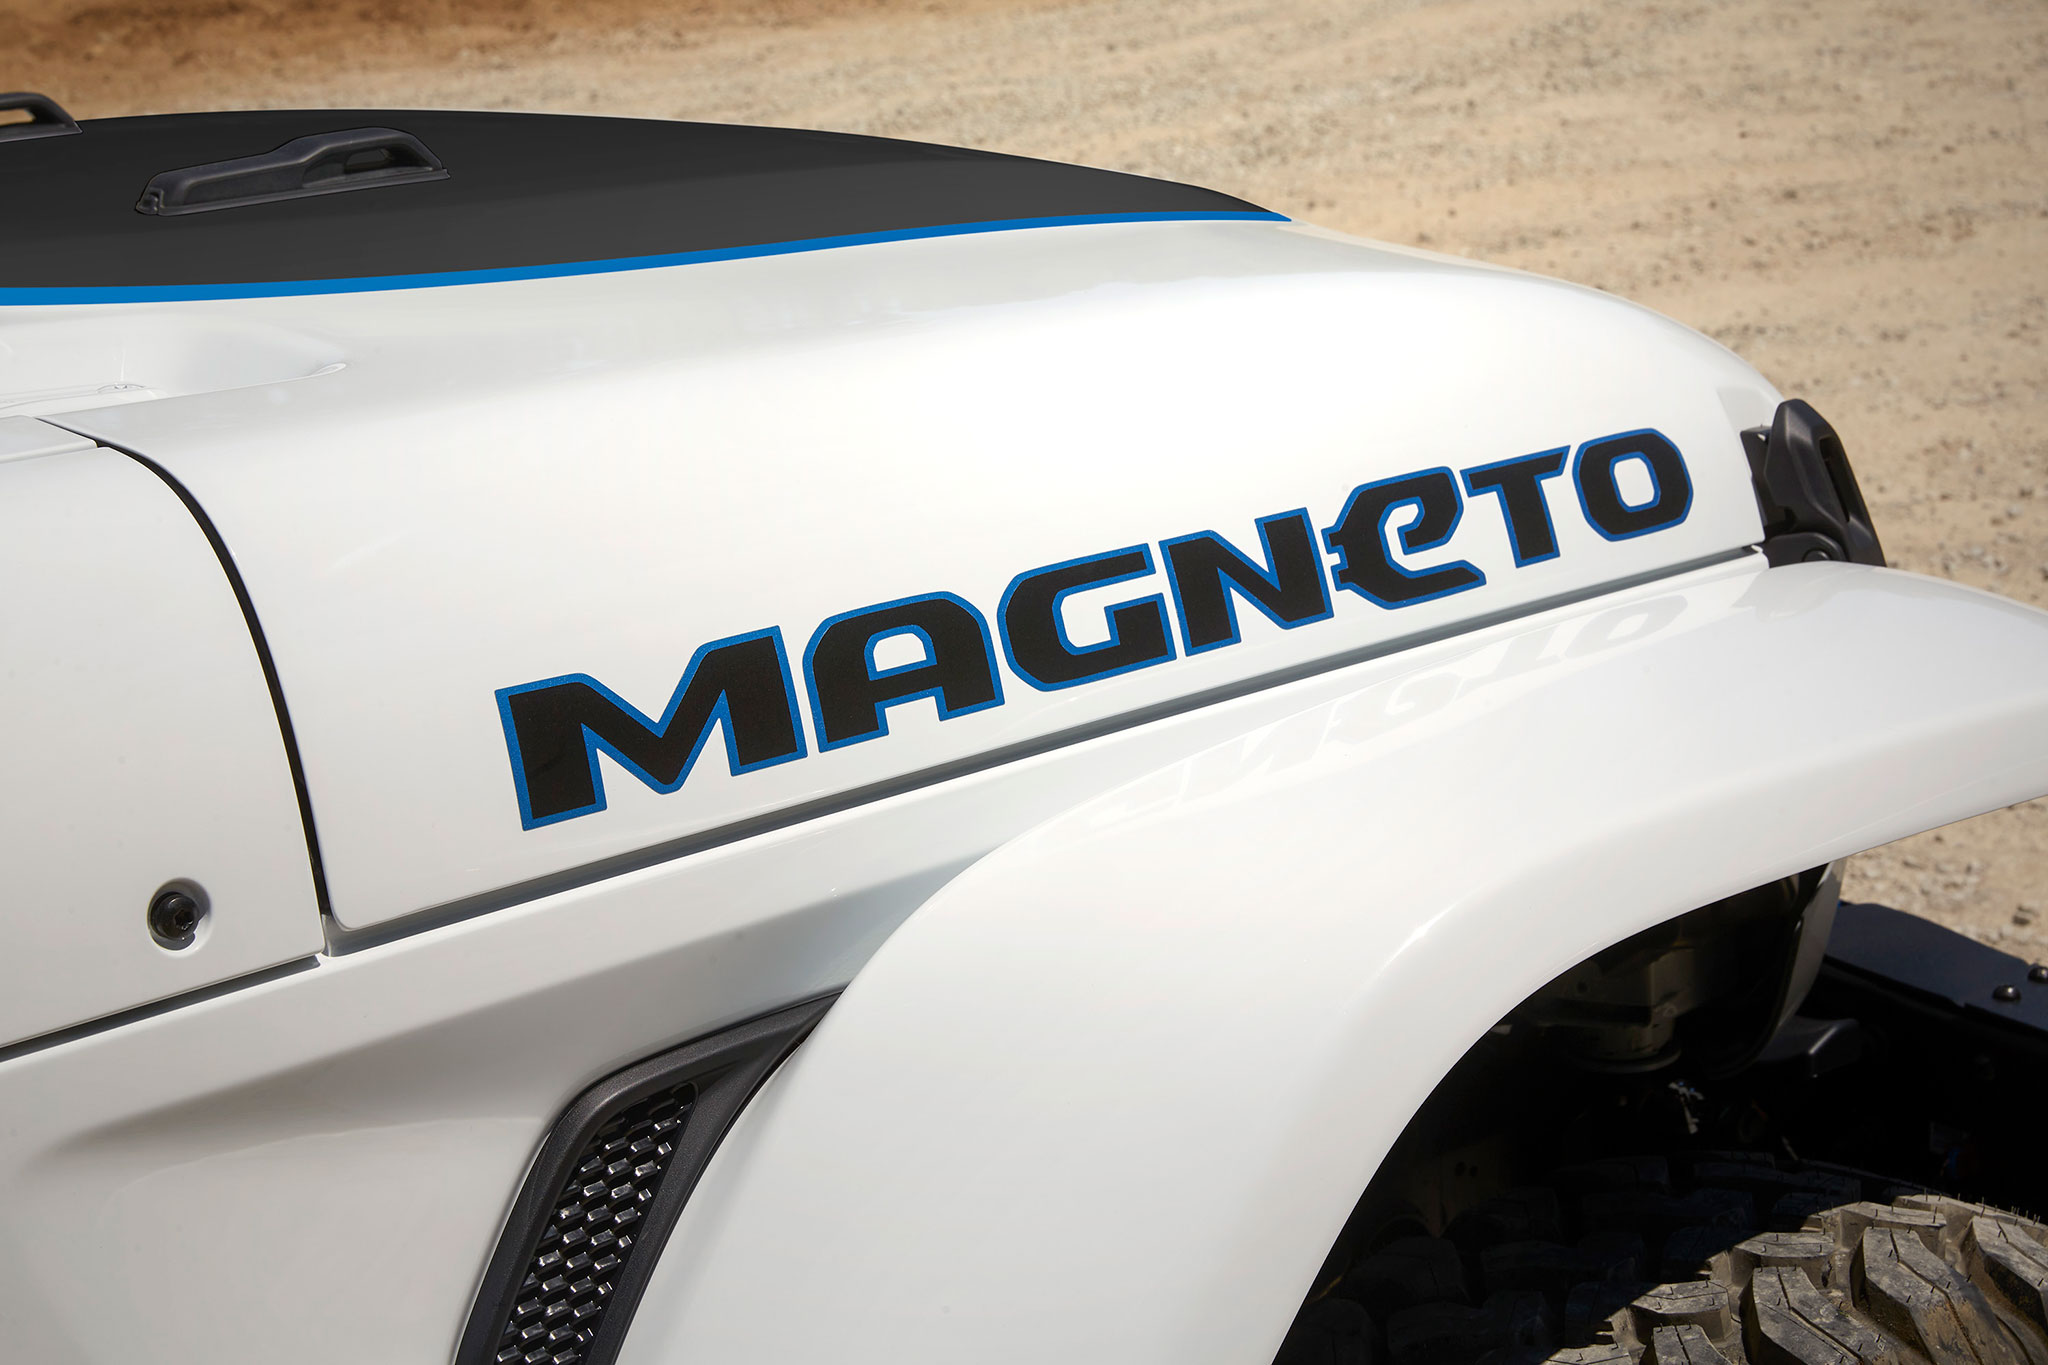 2021 Jeep Wrangler Magneto Concept détail de l'autocollant magneto sur le côté droit du capot avant - Concept Cars de Jeep®.